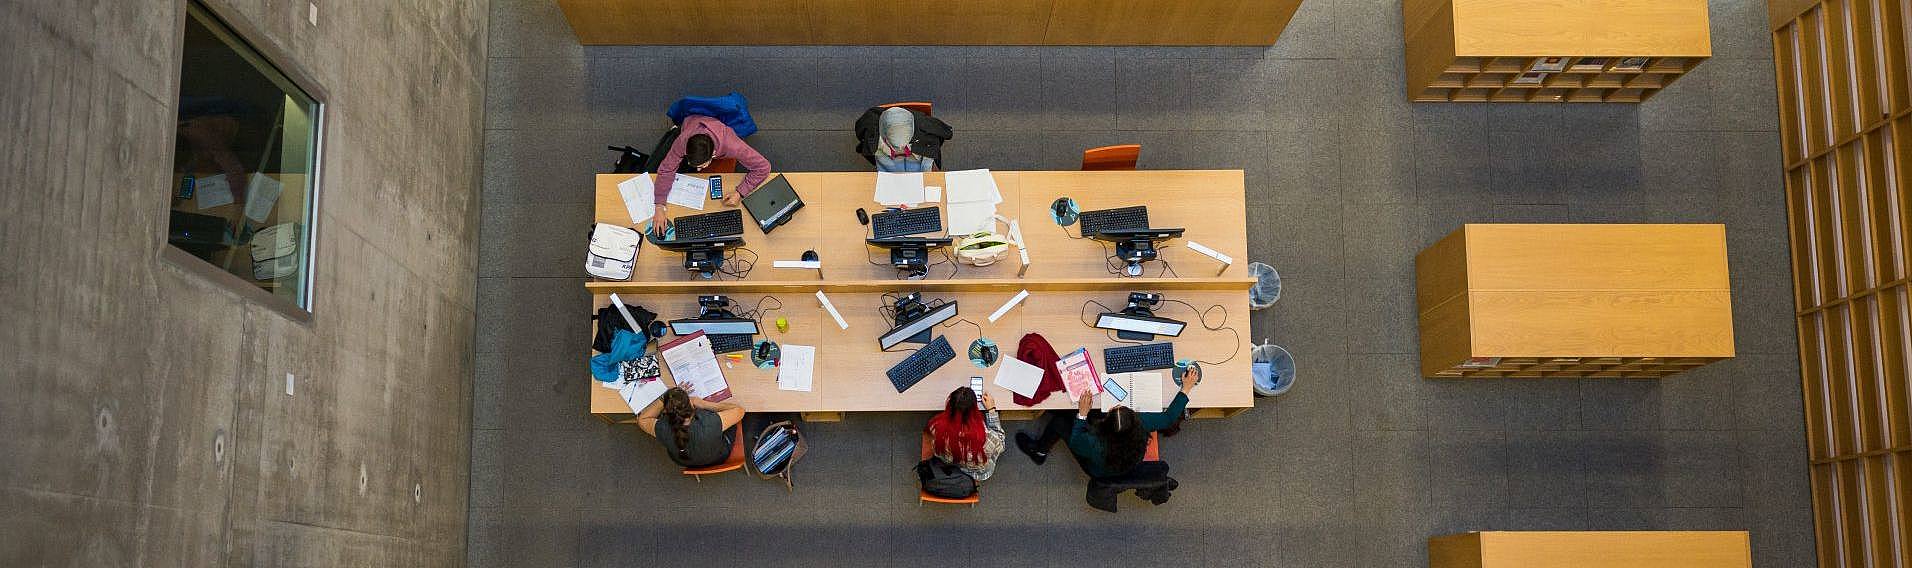 Tisch mit arbeitenden Studierenden in der Bibliothek 